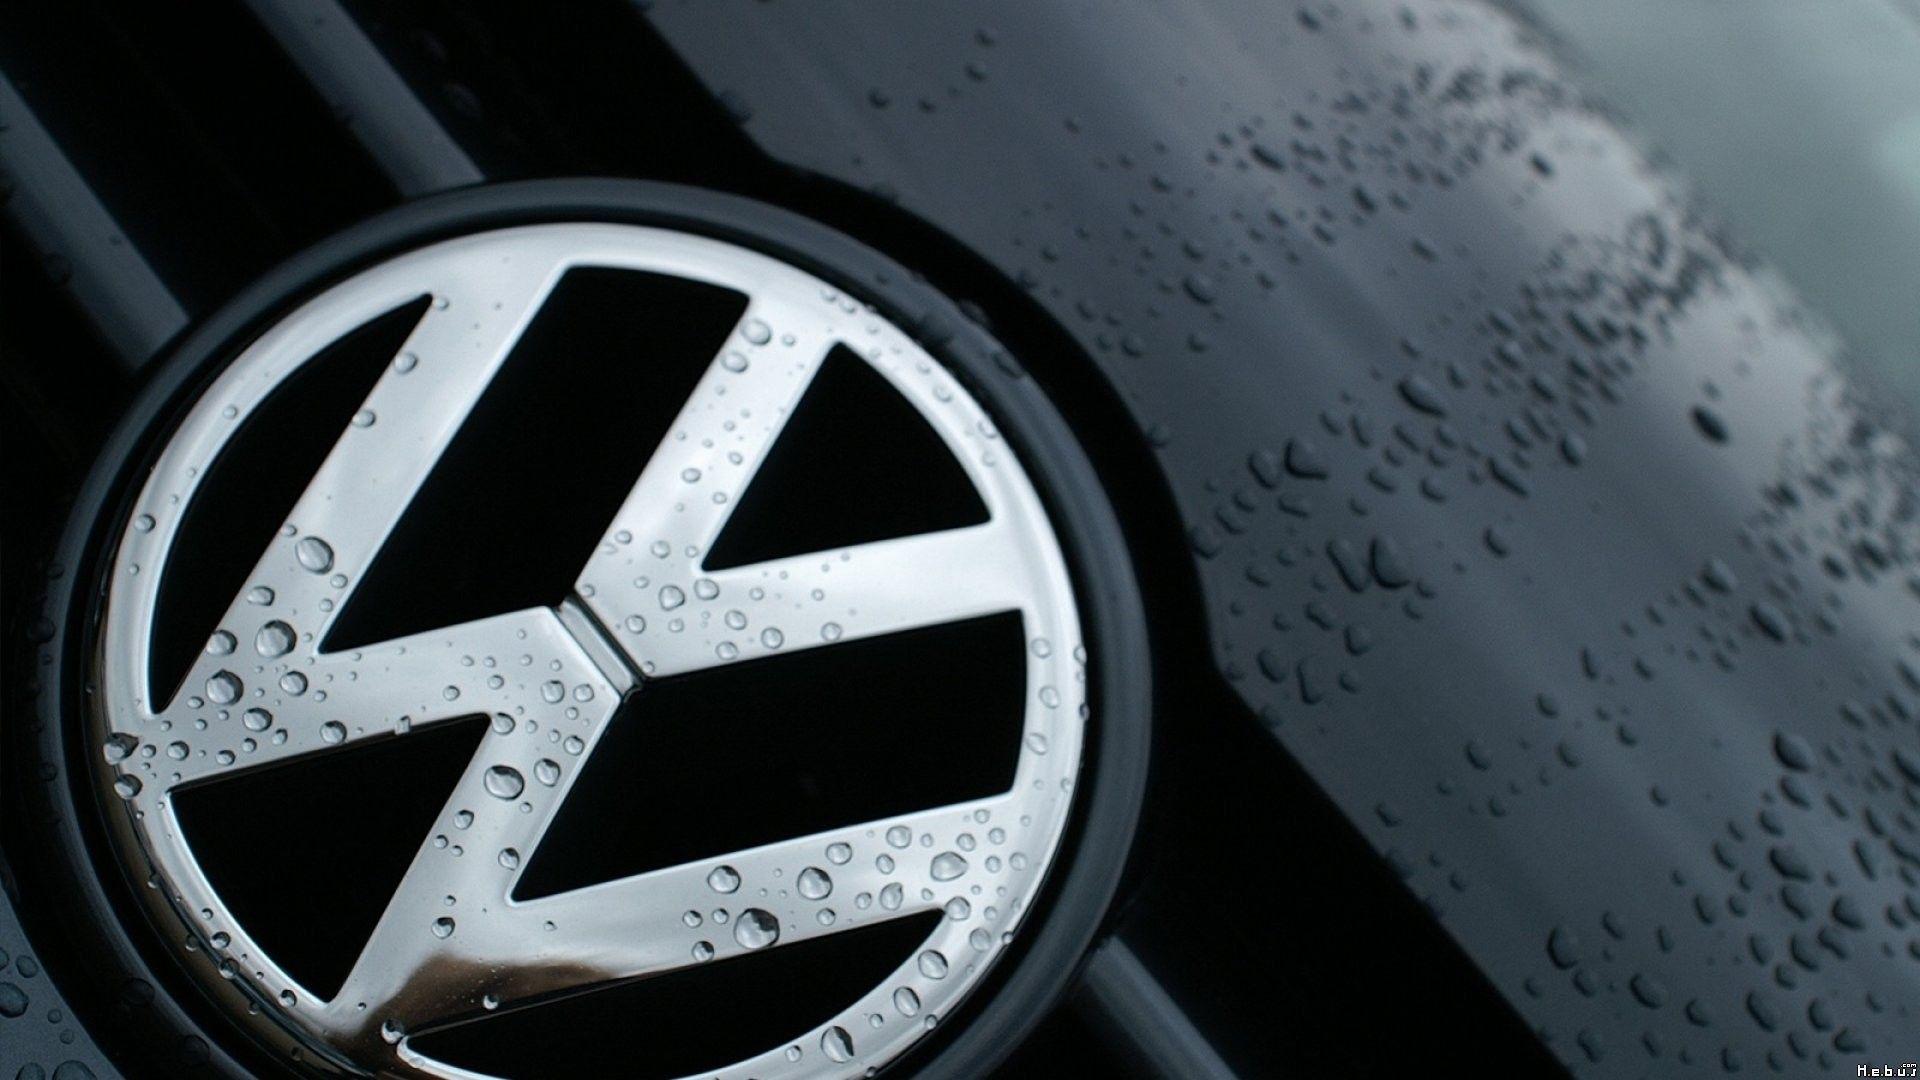 VW Logo Wallpaper